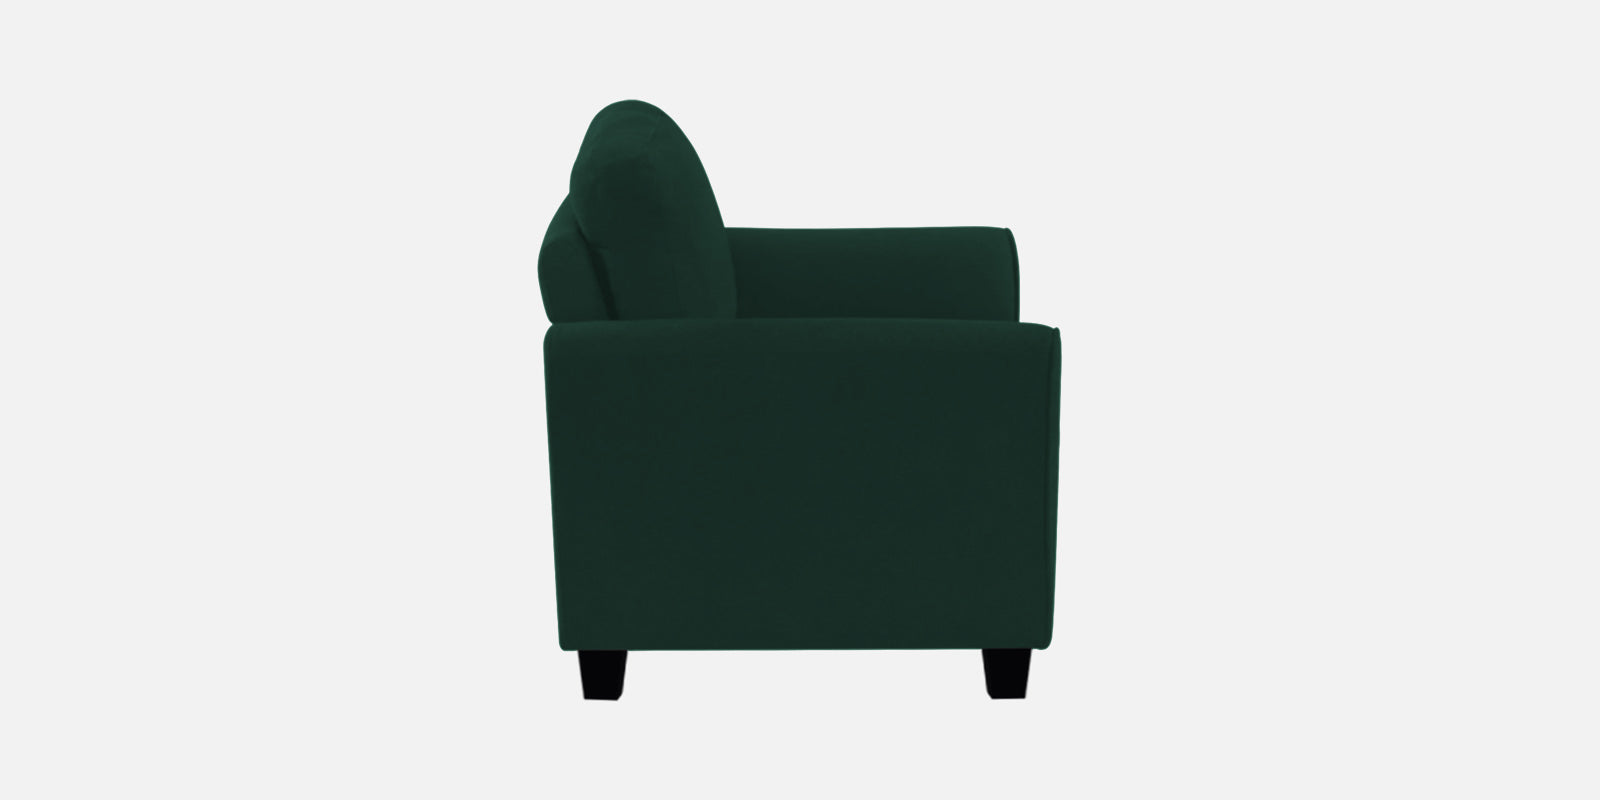 Daroo Velvet 2 Seater Sofa In Forest Green Colour